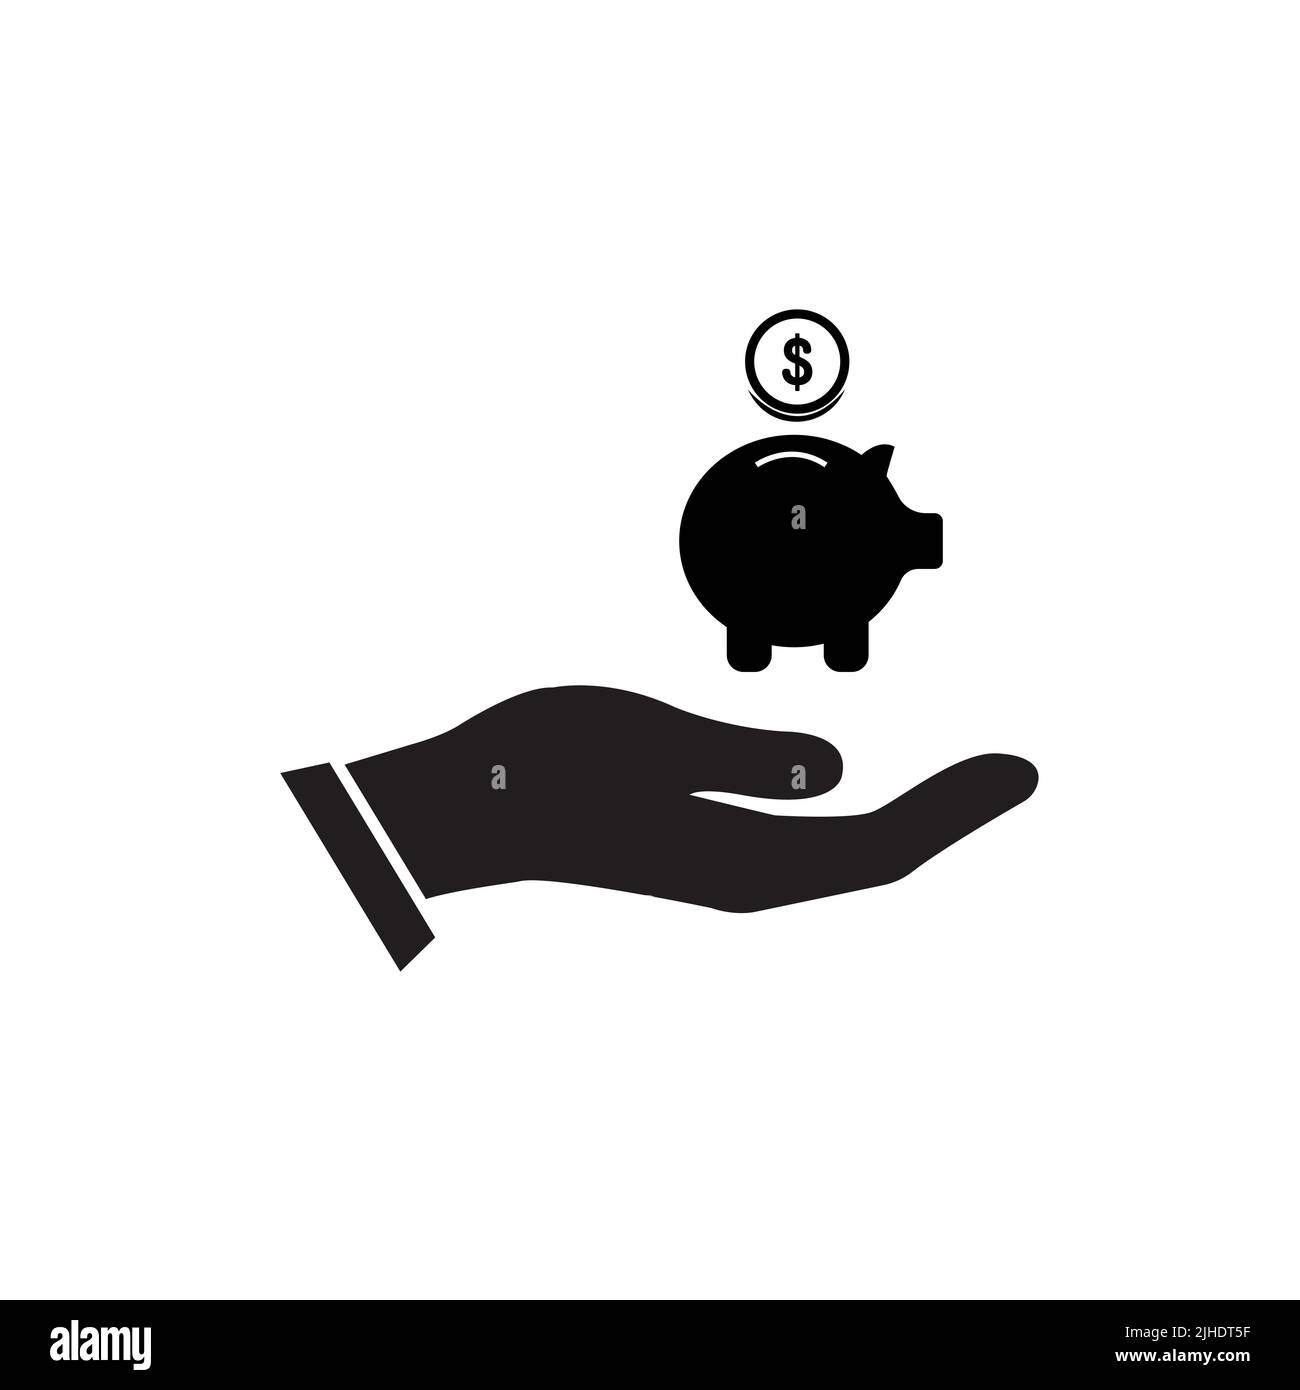 Saving, piggy bank in hand - vector icon Stock Vector